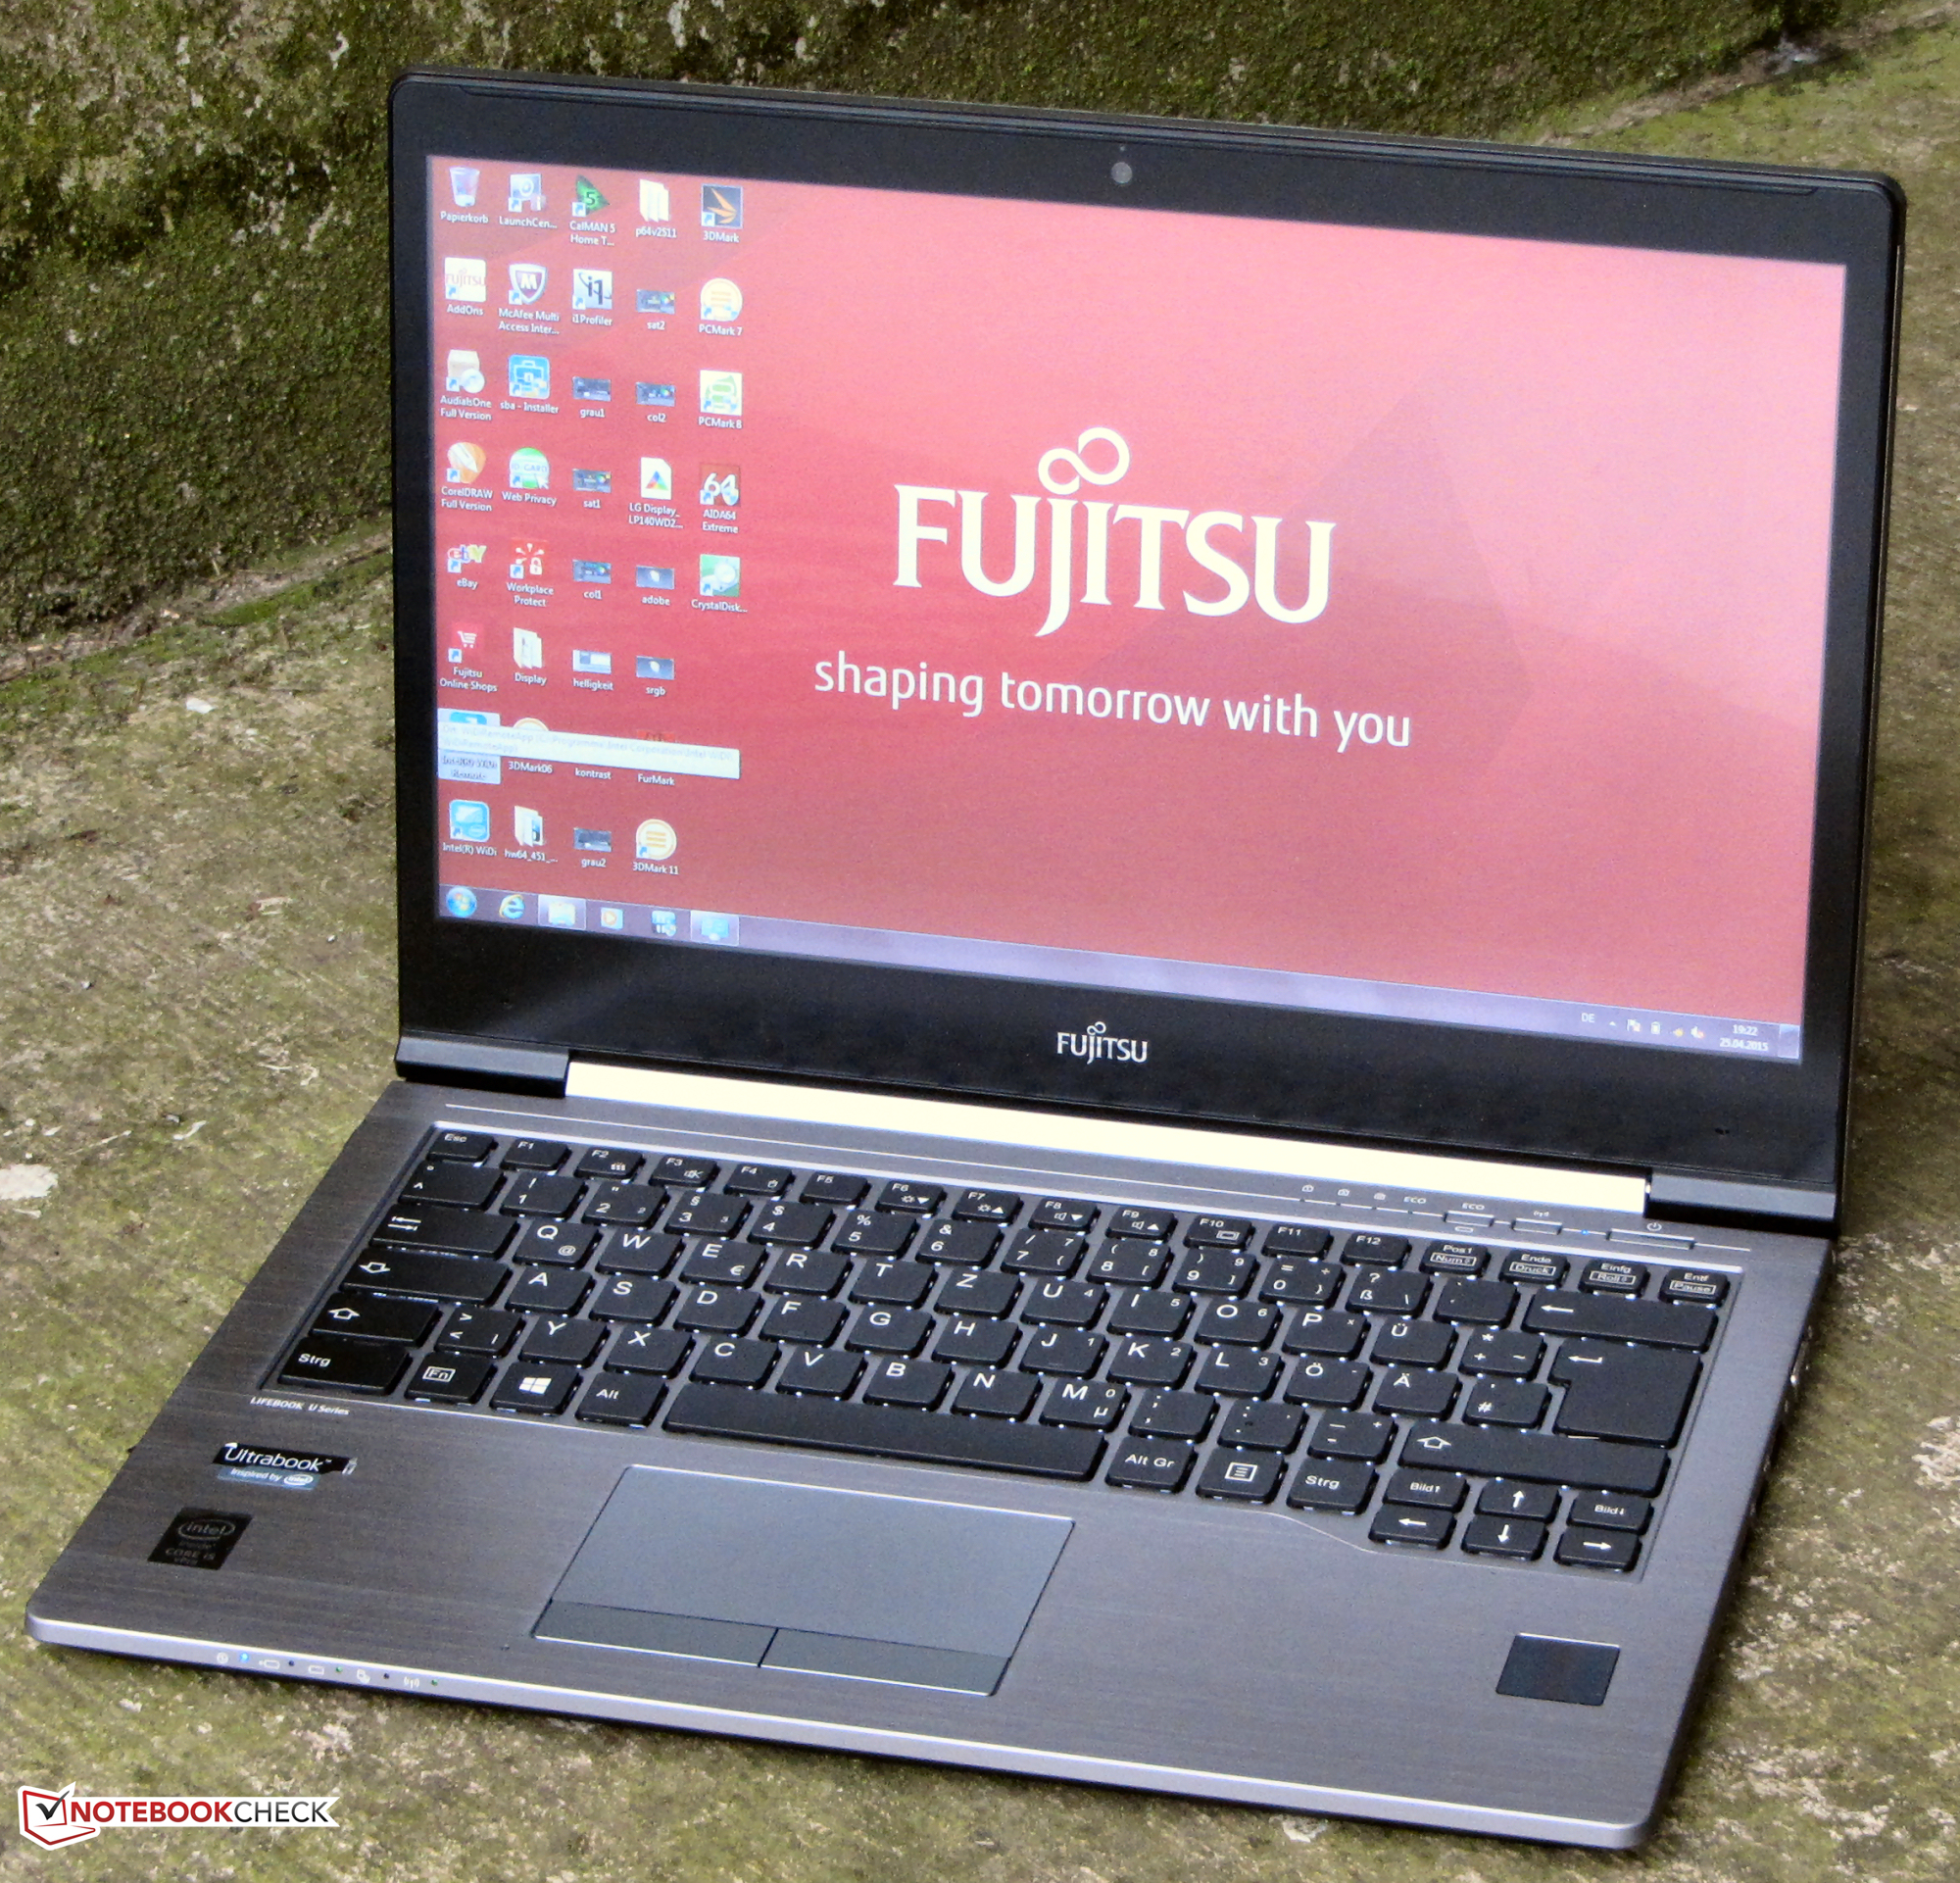 FUJITSU Notebook LIFEBOOK U745 <br>Core